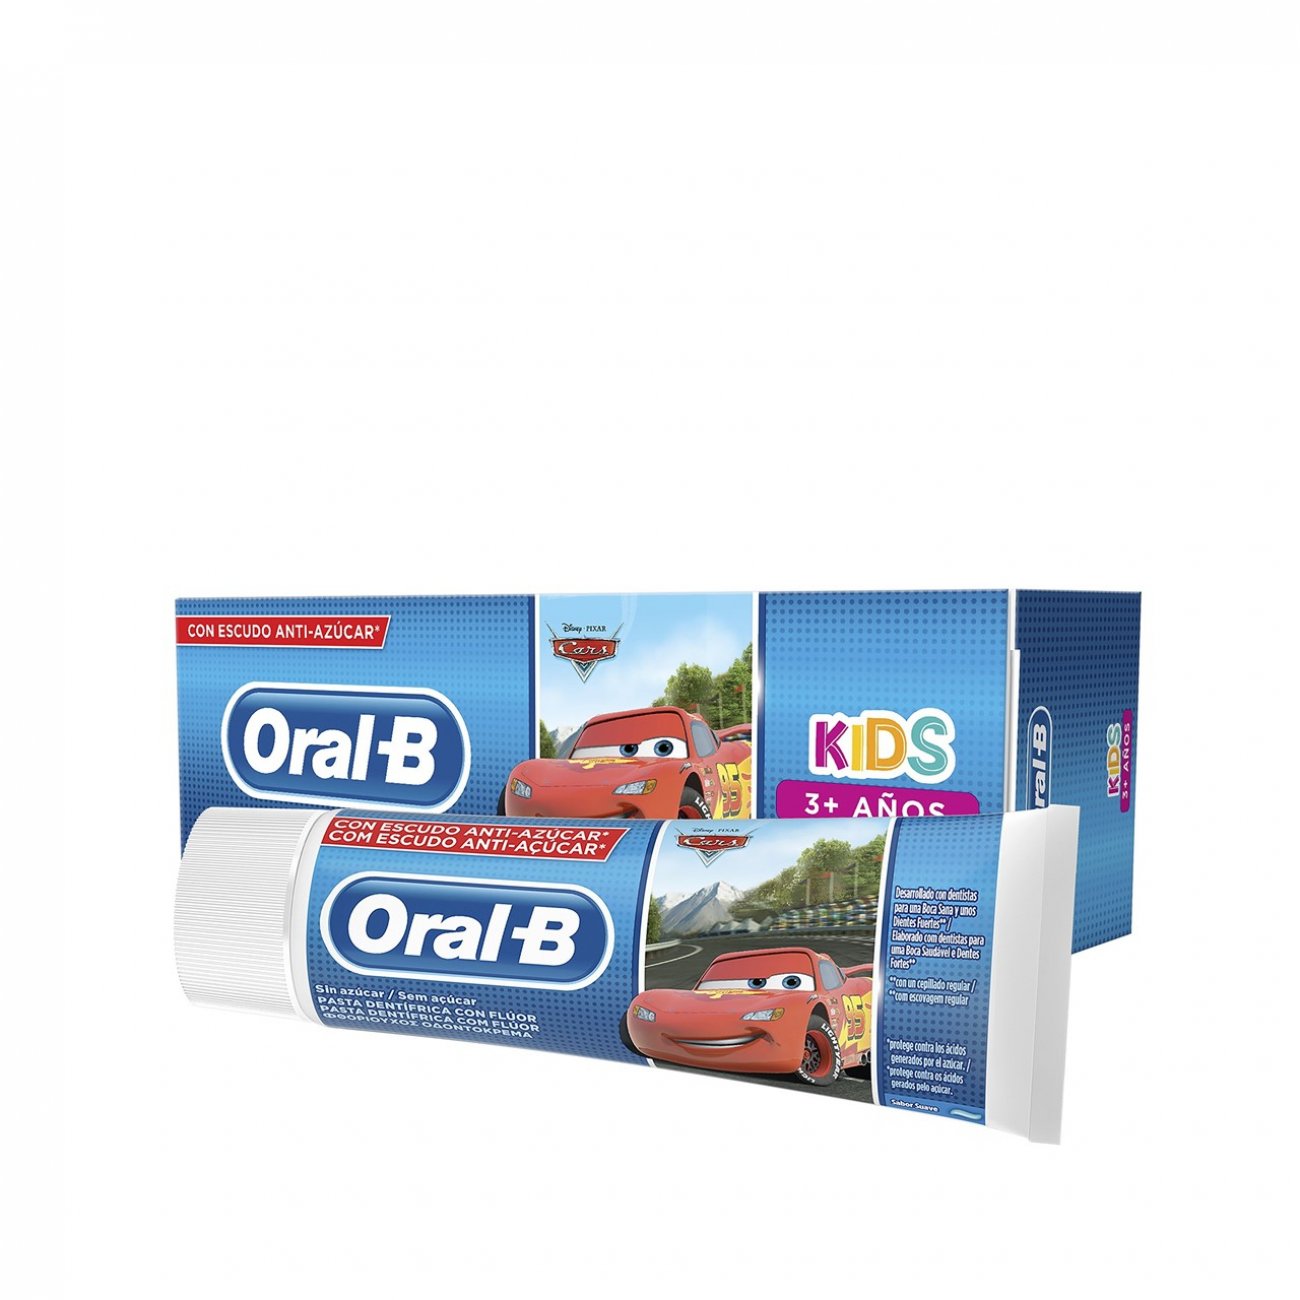 Дитяча зубна паста Oral-B Kids Mit zucker-schutz